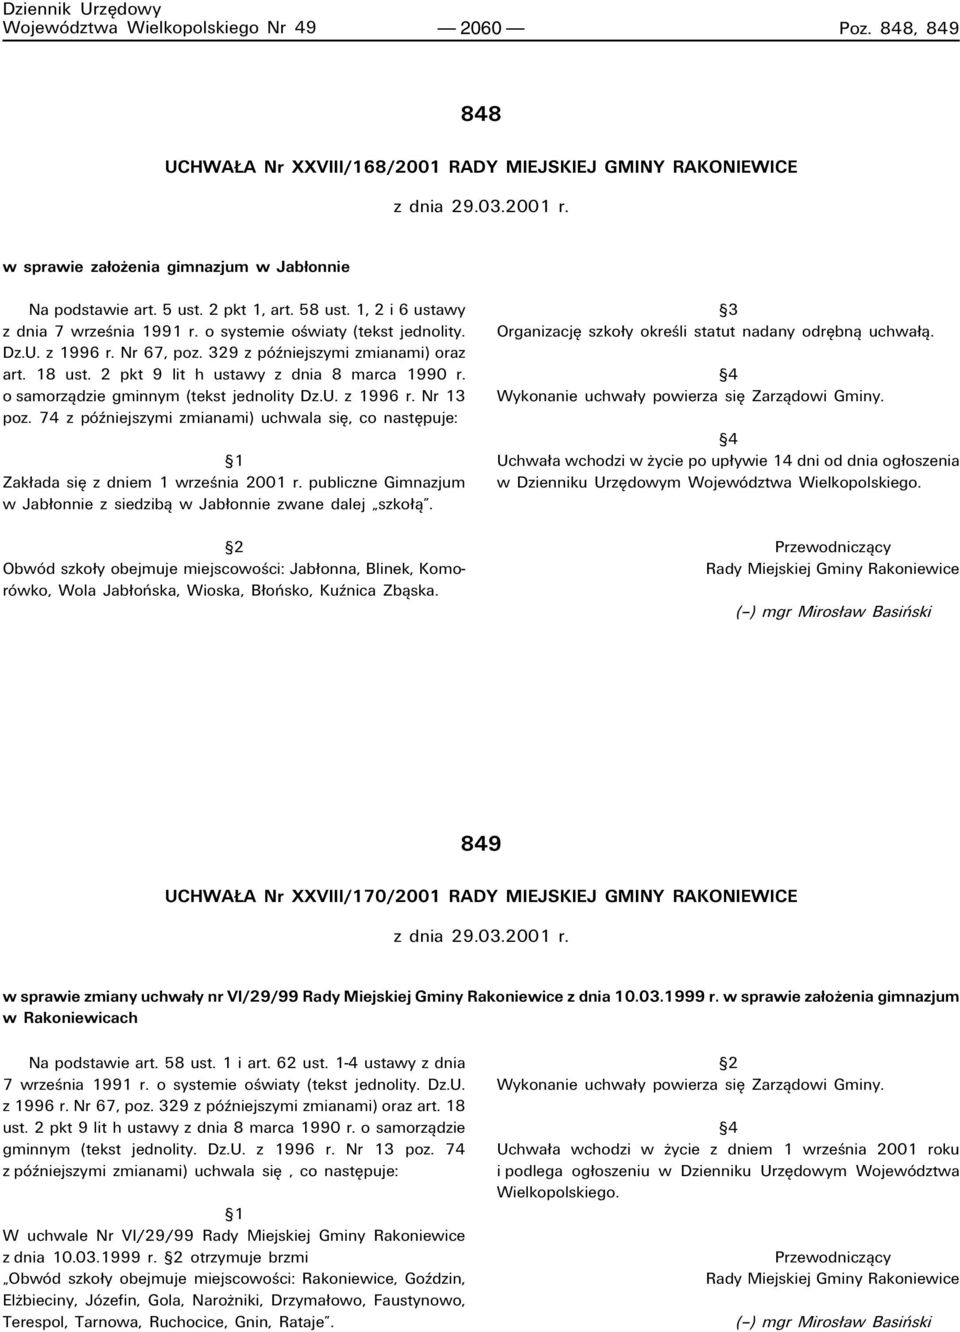 329 z pûüniejszymi zmianami) oraz art. 18 ust. 2 pkt 9 lit h ustawy z dnia 8 marca 1990 r. o samorzπdzie gminnym (tekst jednolity Dz.U. z 1996 r. Nr 13 poz.